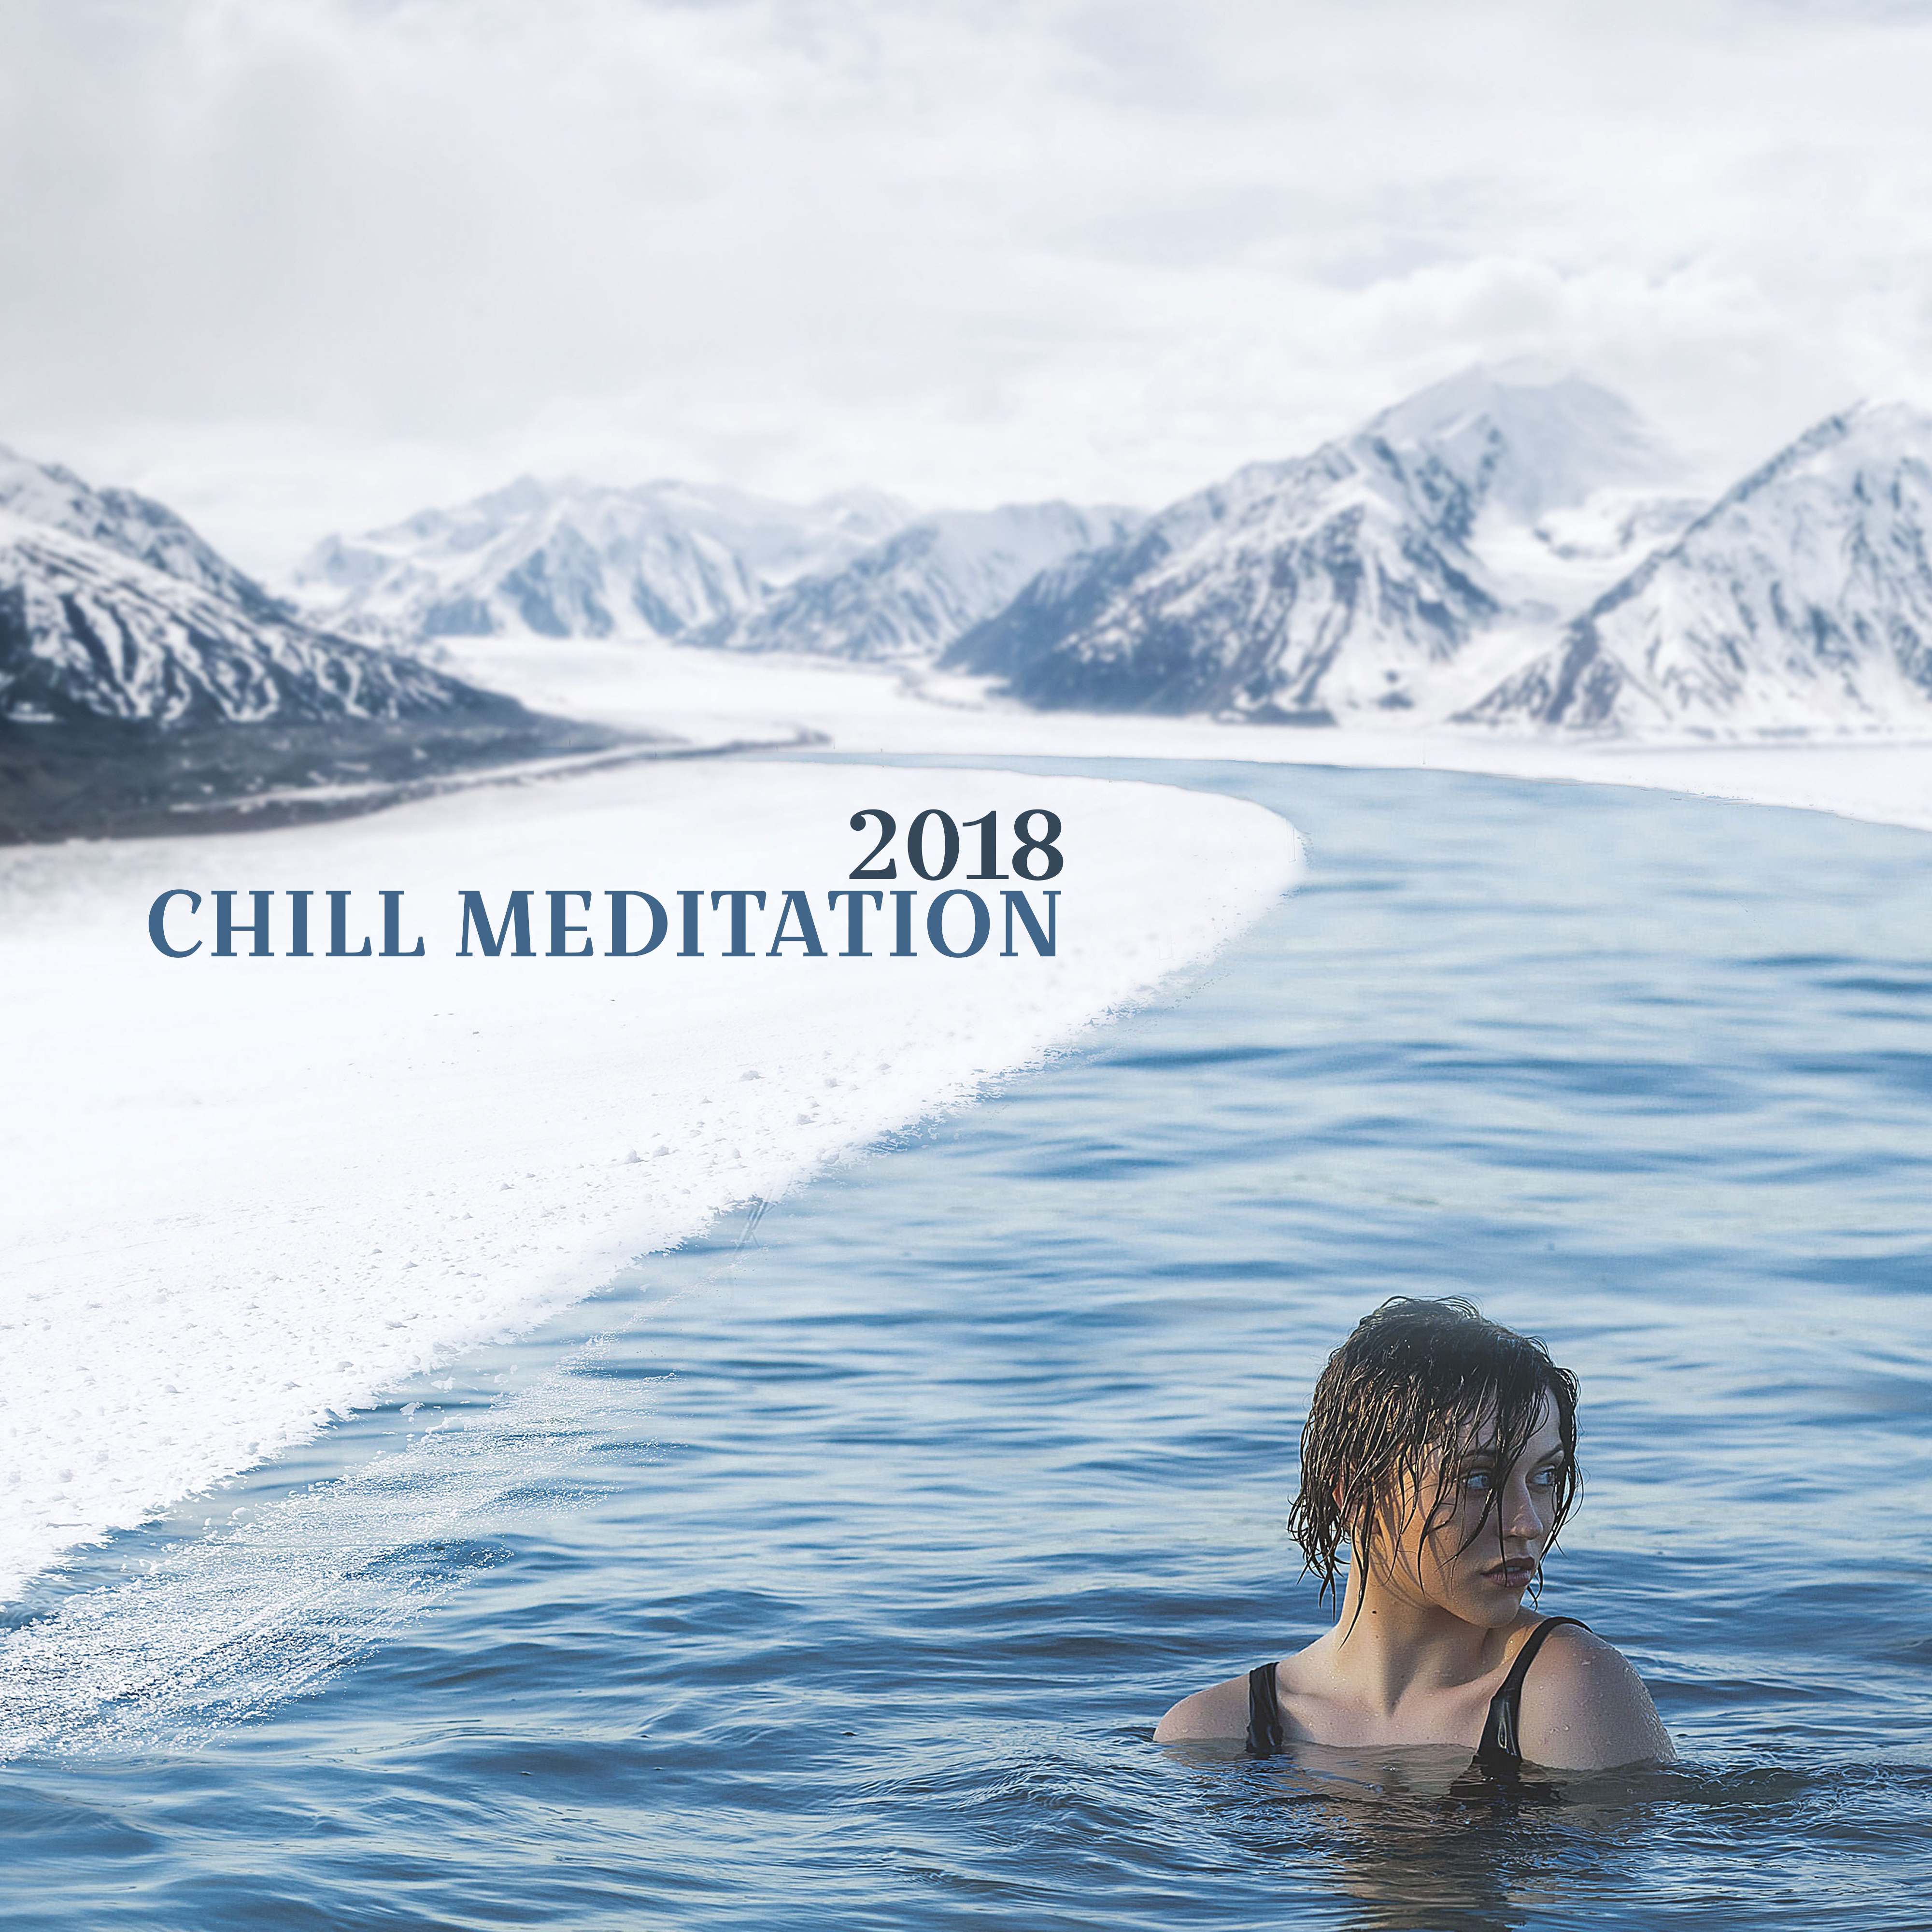 Chill Meditation 2018